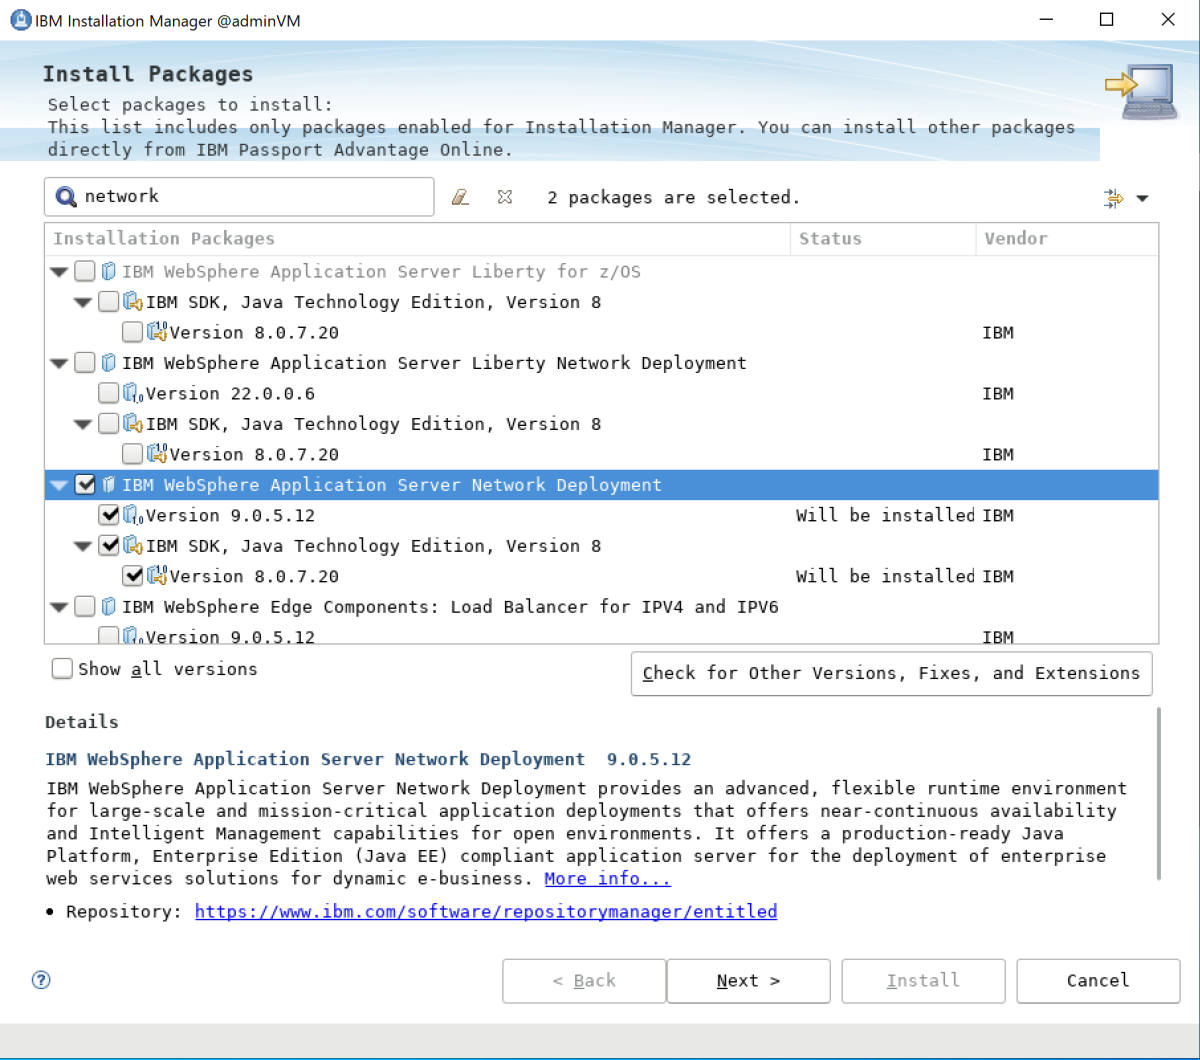 Schermopname van IBM WebSphere Application Server Install Packages geselecteerd.